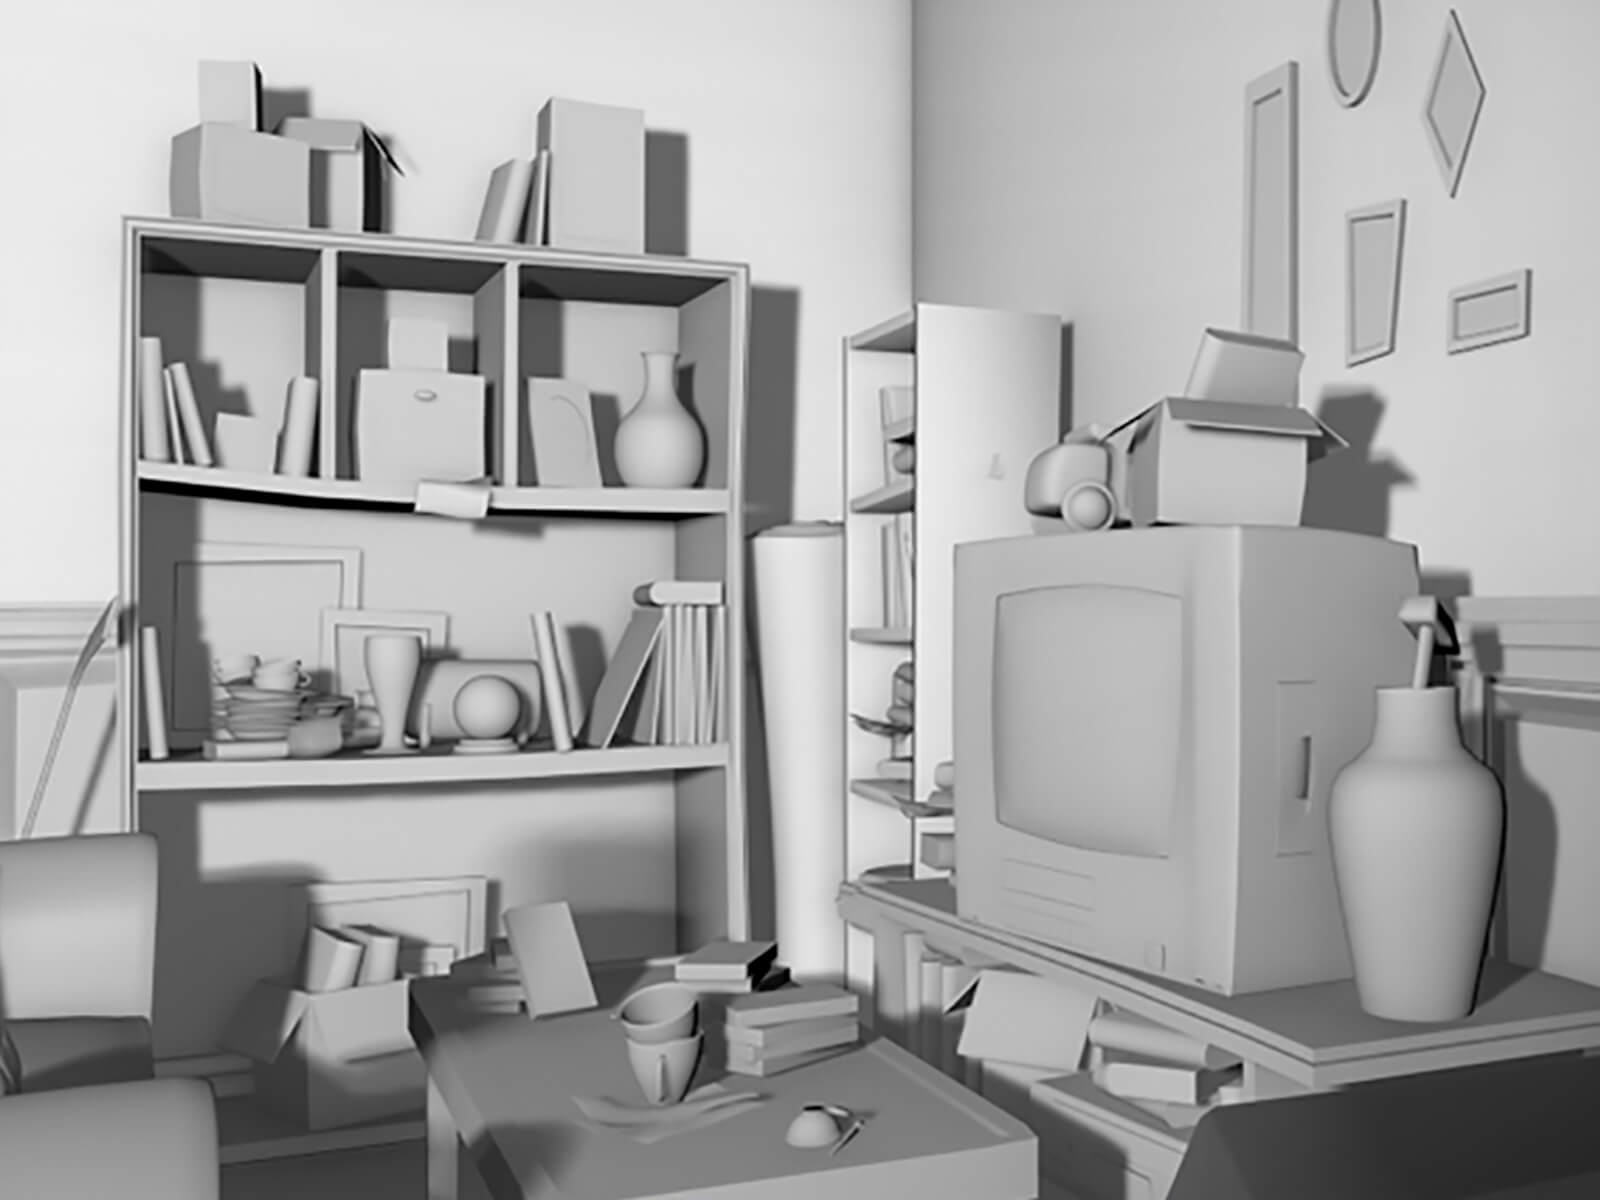 Una sala de estar desordenada e incolora modelada en 3D con estantes hundidos llenos de basura, una mesa de café y un pequeño televisor.